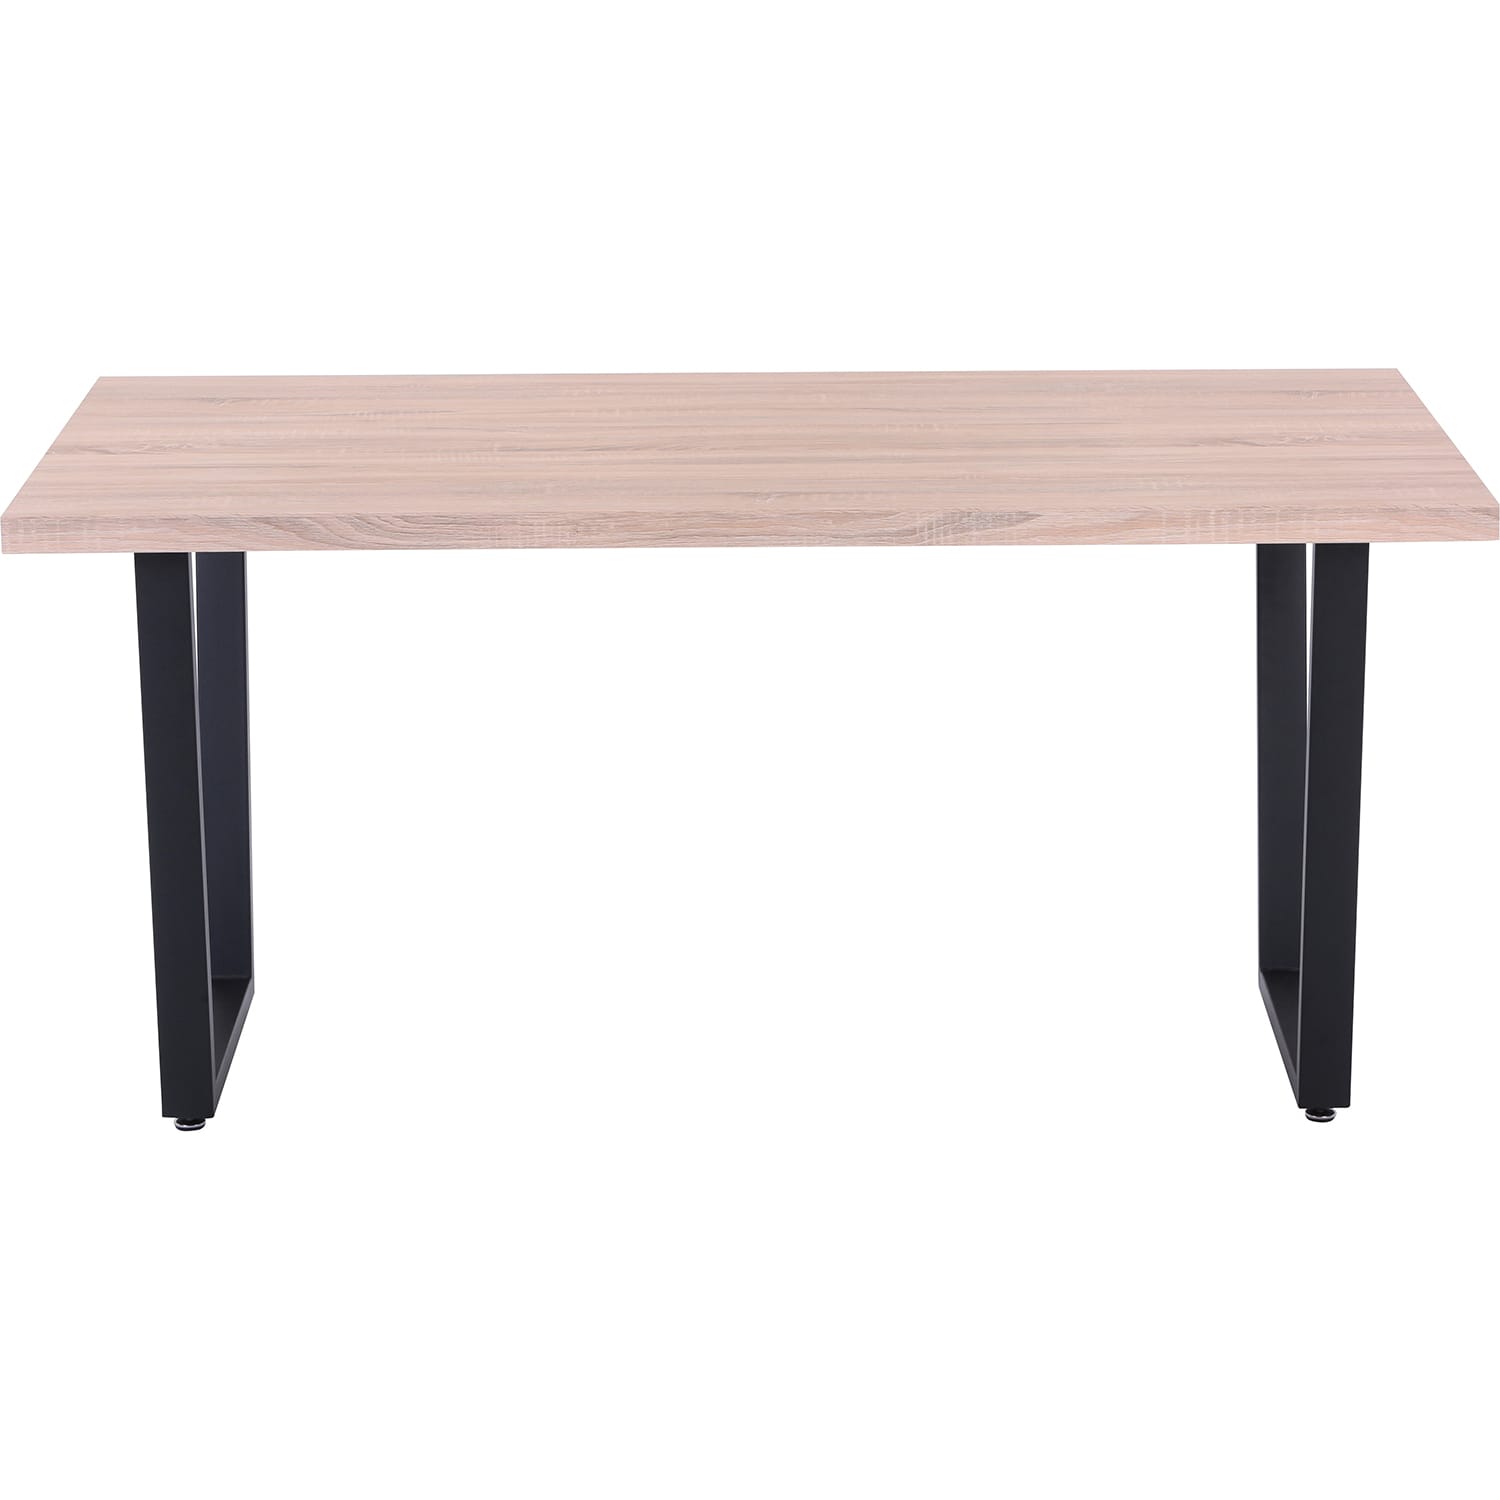 Eiche Kufen-Gestell 160x90 mutoni Möbel | | | Dekor Esstisch Esstische Tische | Designtische | Sonoma möbel